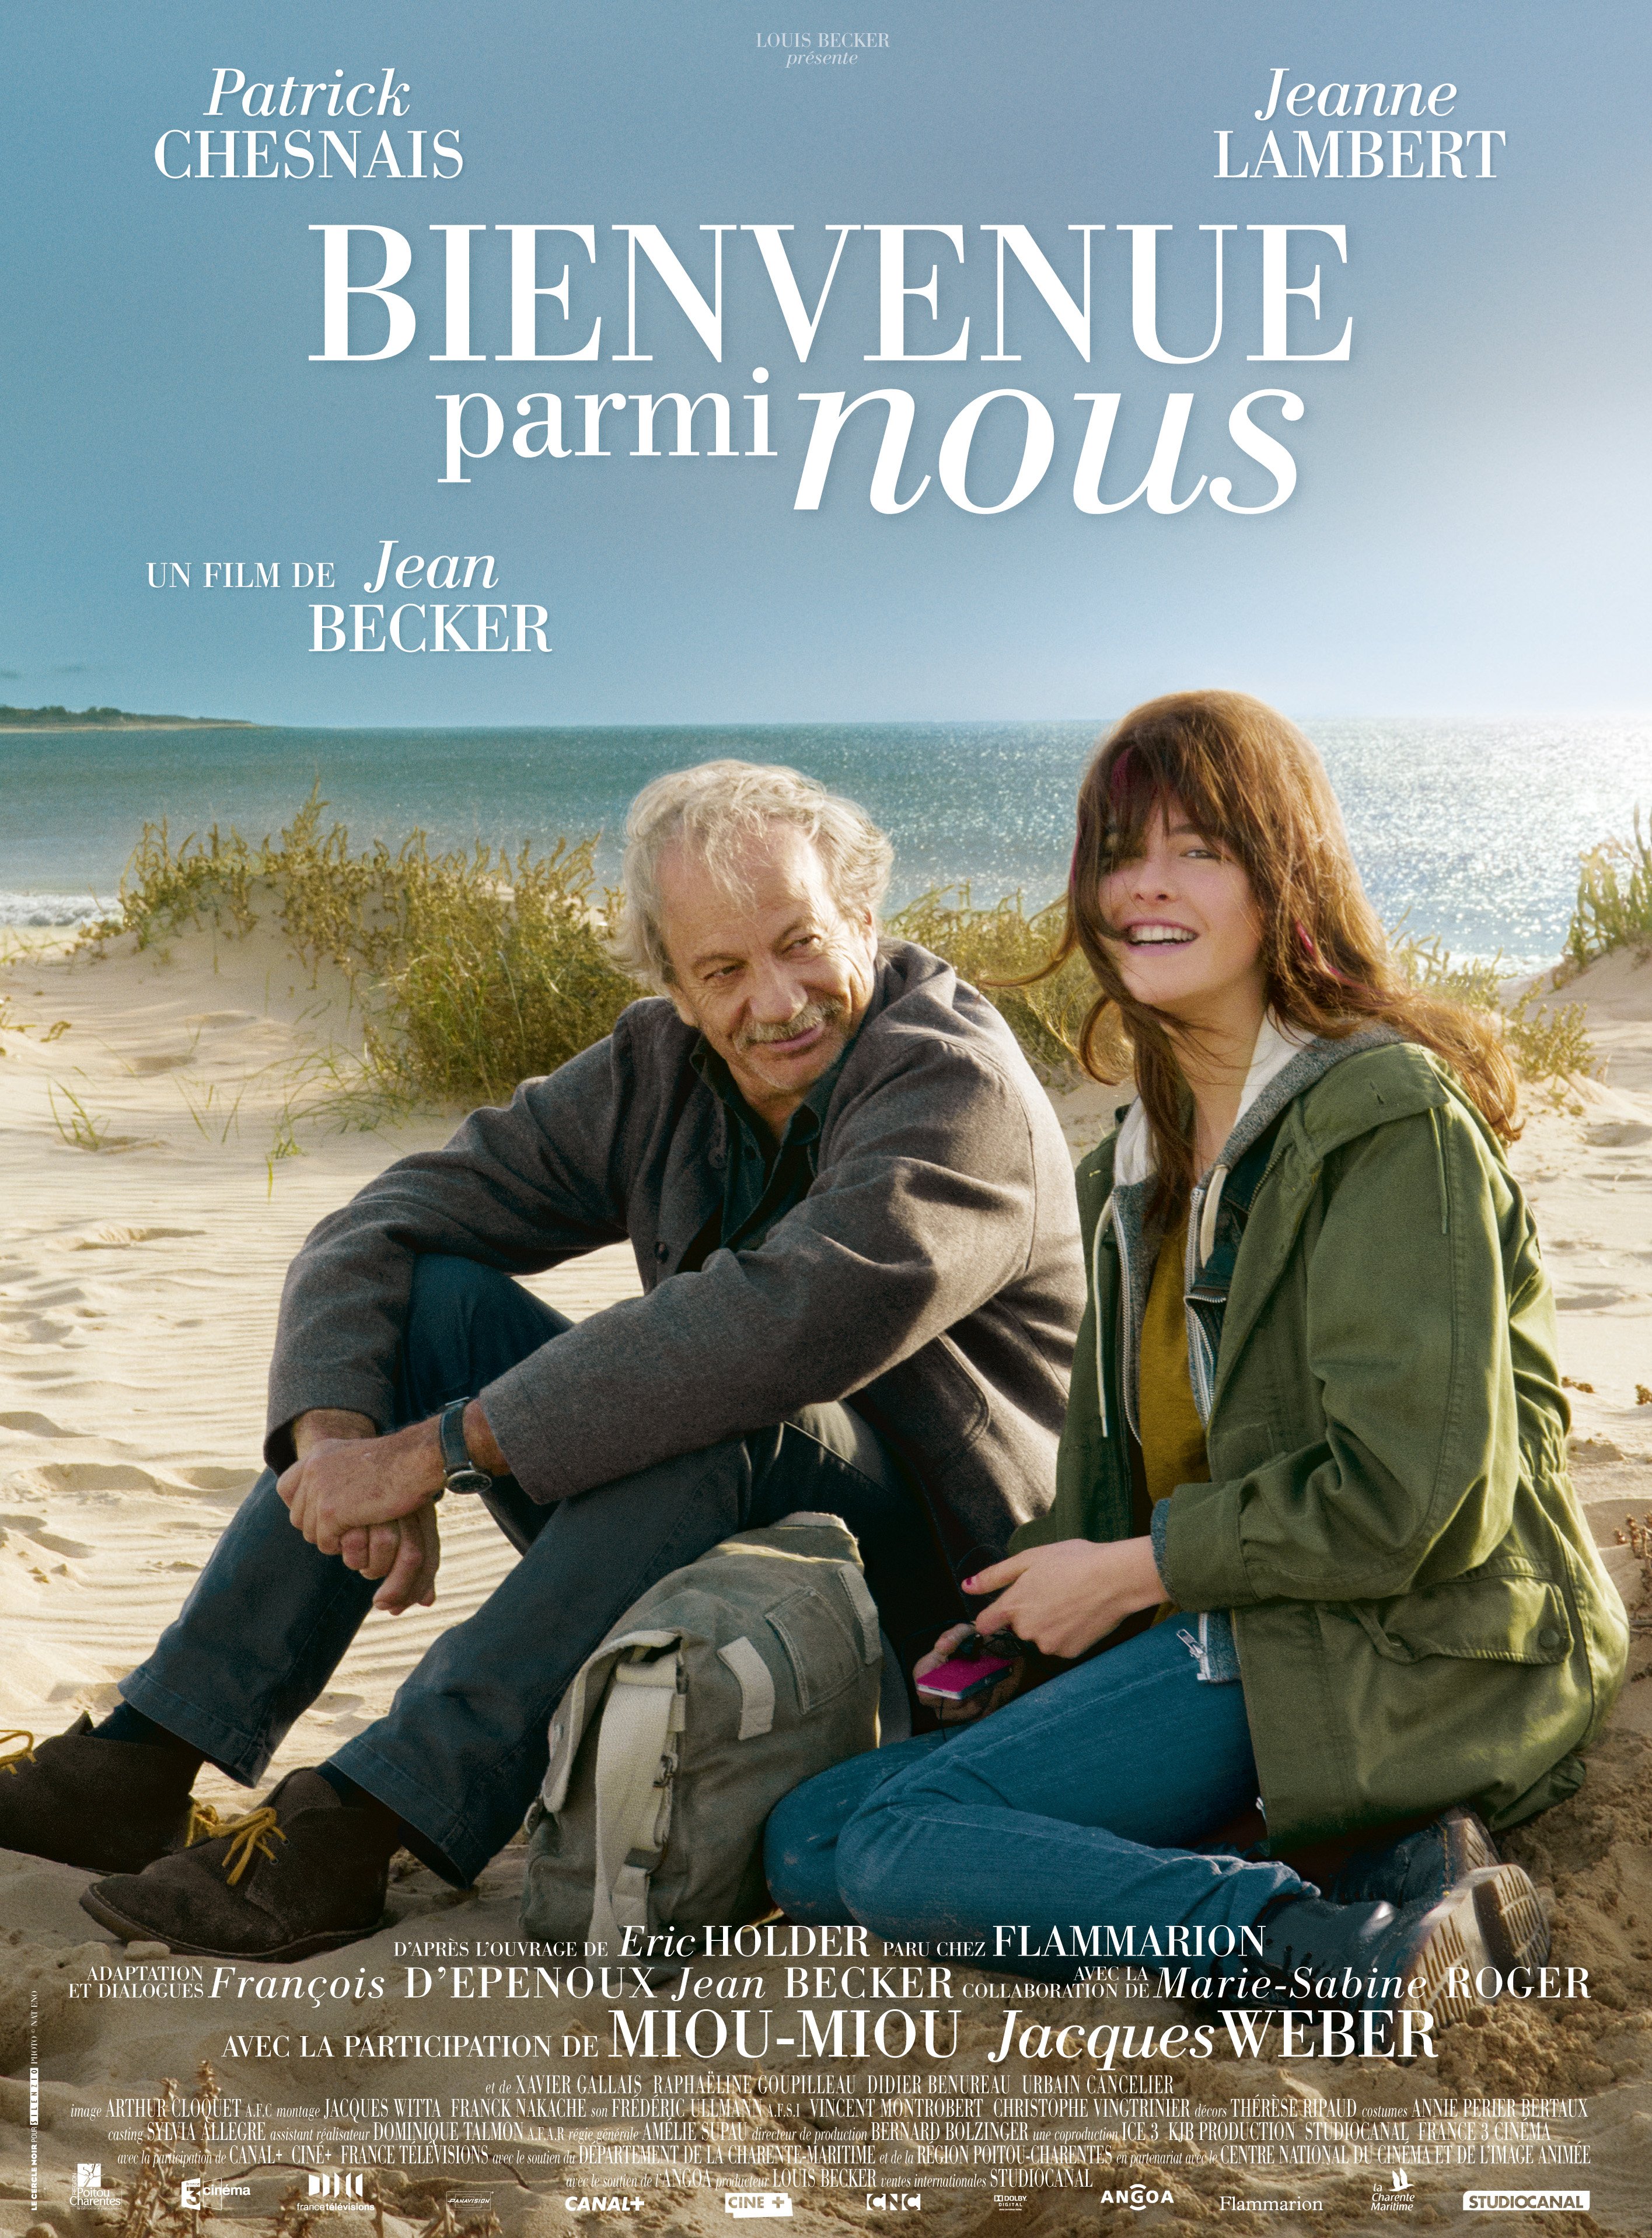 Poster of the movie Bienvenue parmi nous